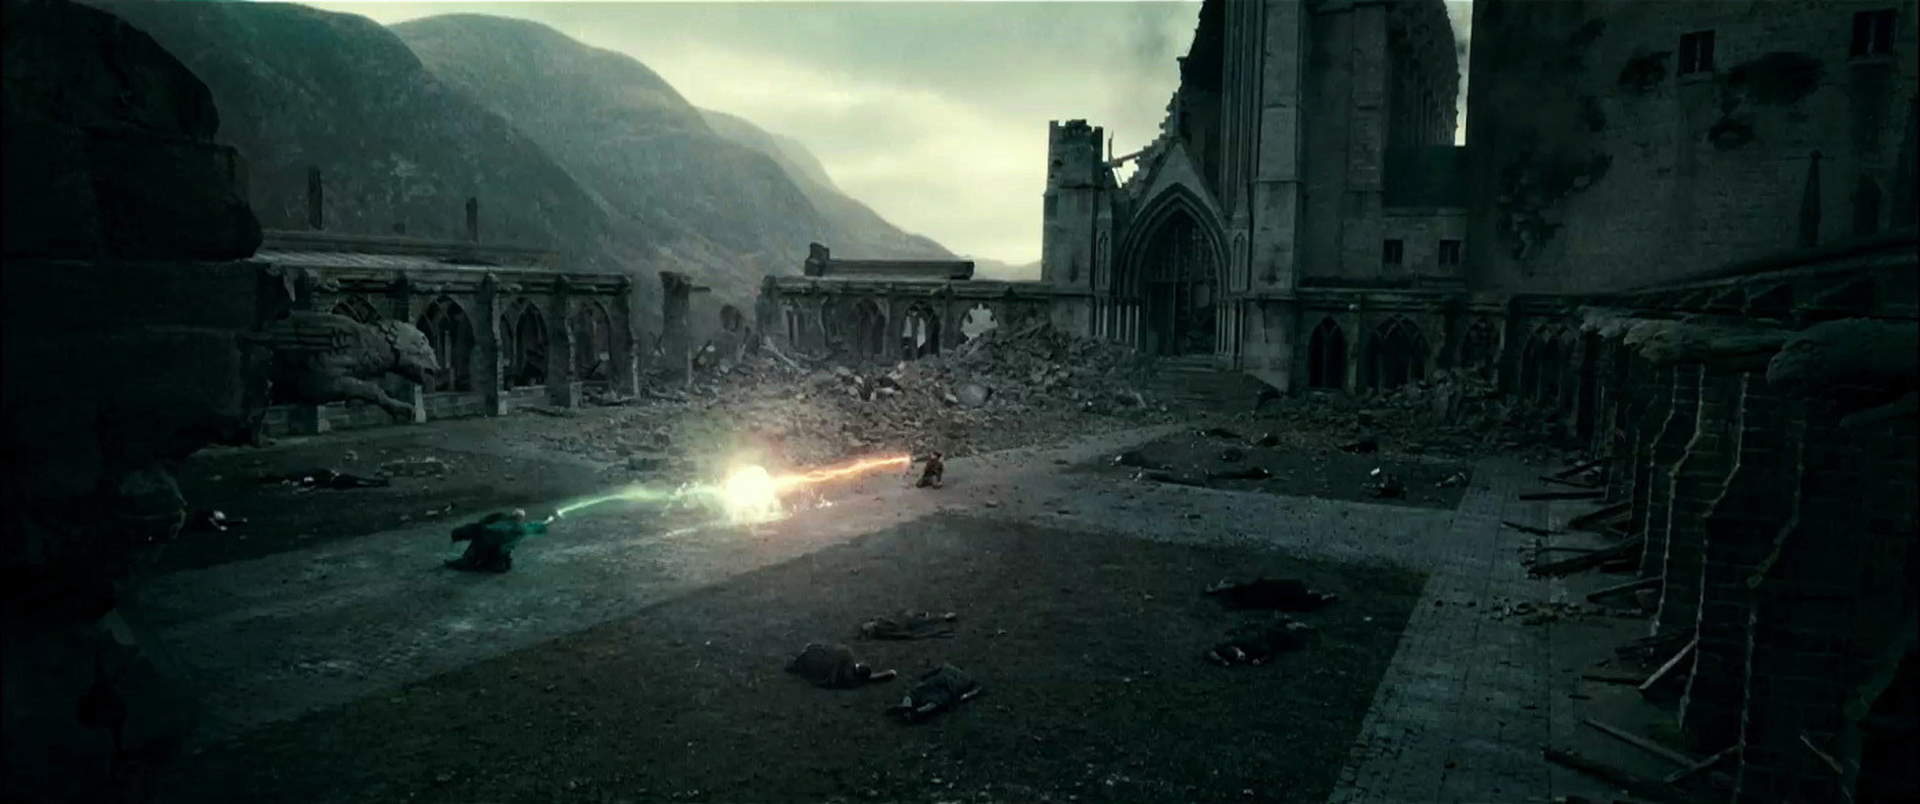 Harry Potter 7.1 und die Heiligtümer des Todes (Teil 1) - Szenenbild 10 von 23